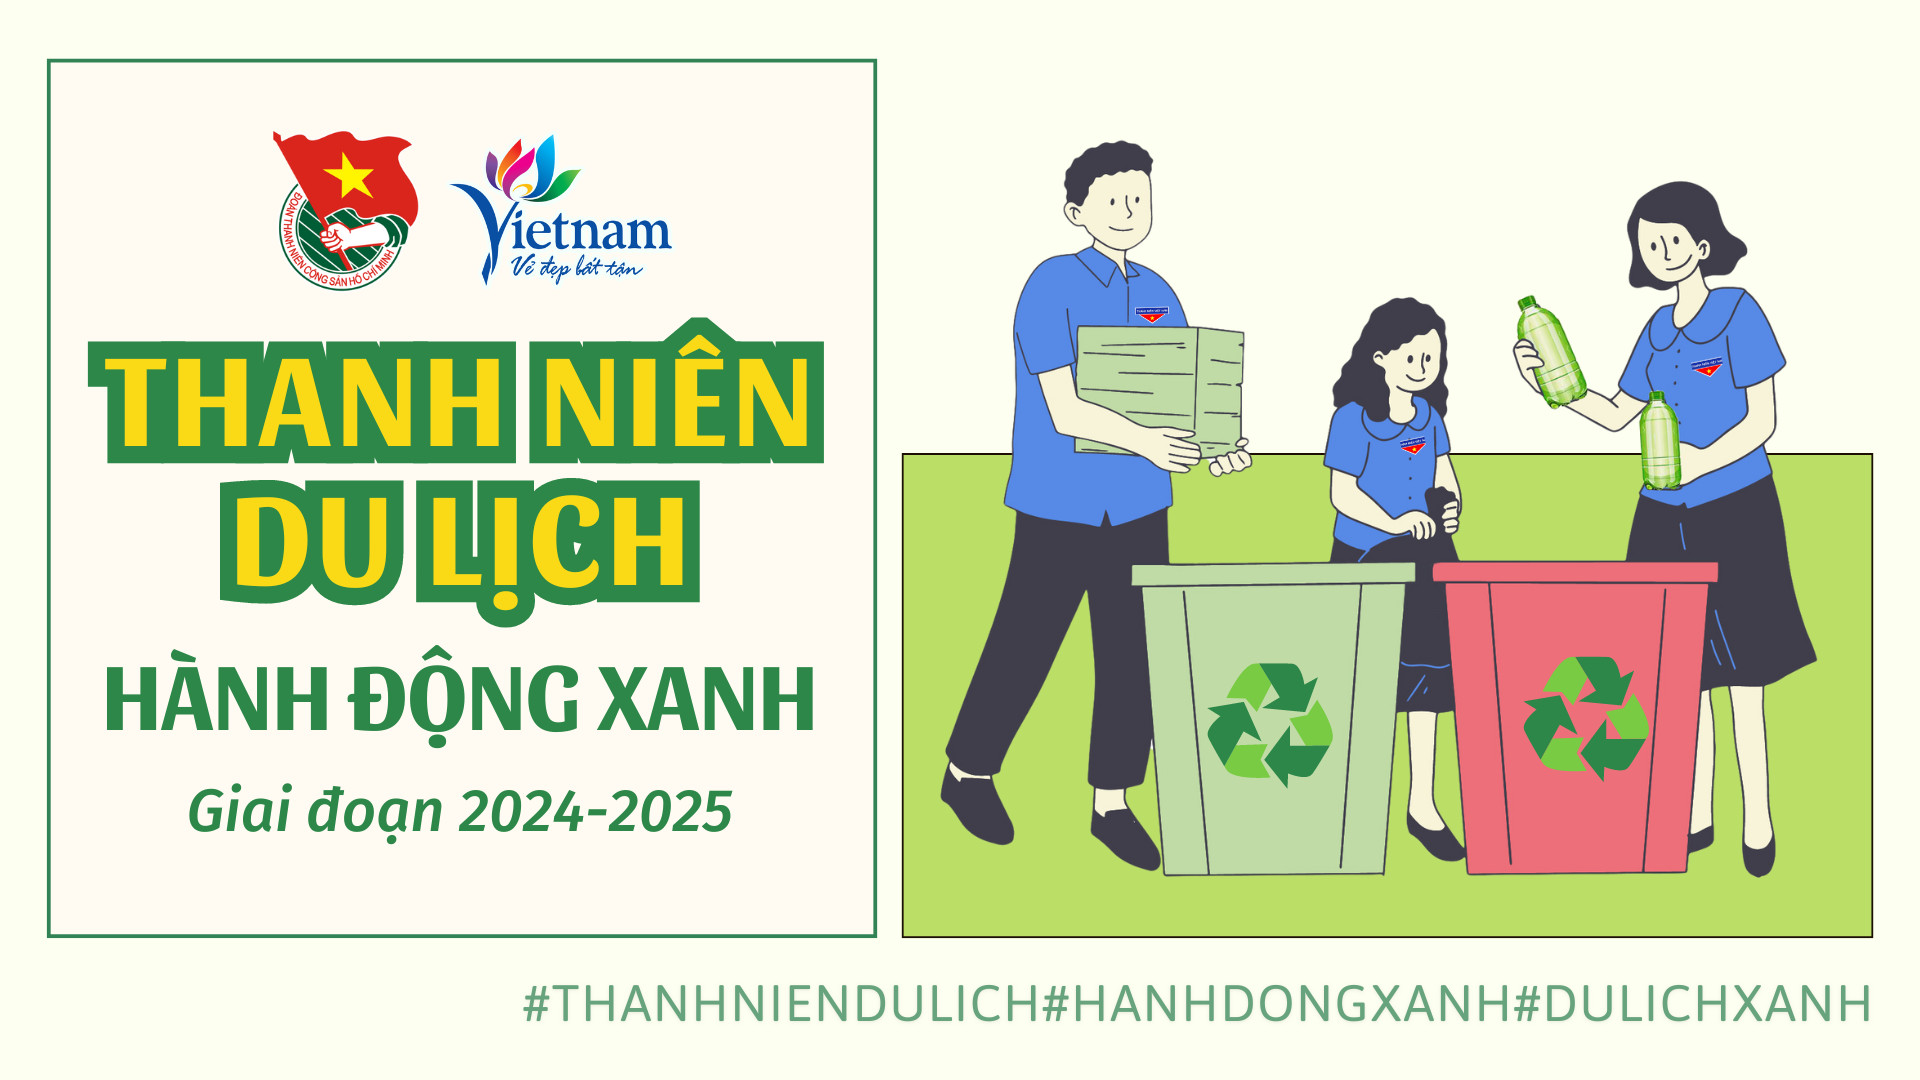 [Infographic] Đoàn Thanh niên Cục Du lịch Quốc gia Việt Nam phát động phong trào “Thanh niên du lịch hành động Xanh” giai đoạn 2024 - 2025 